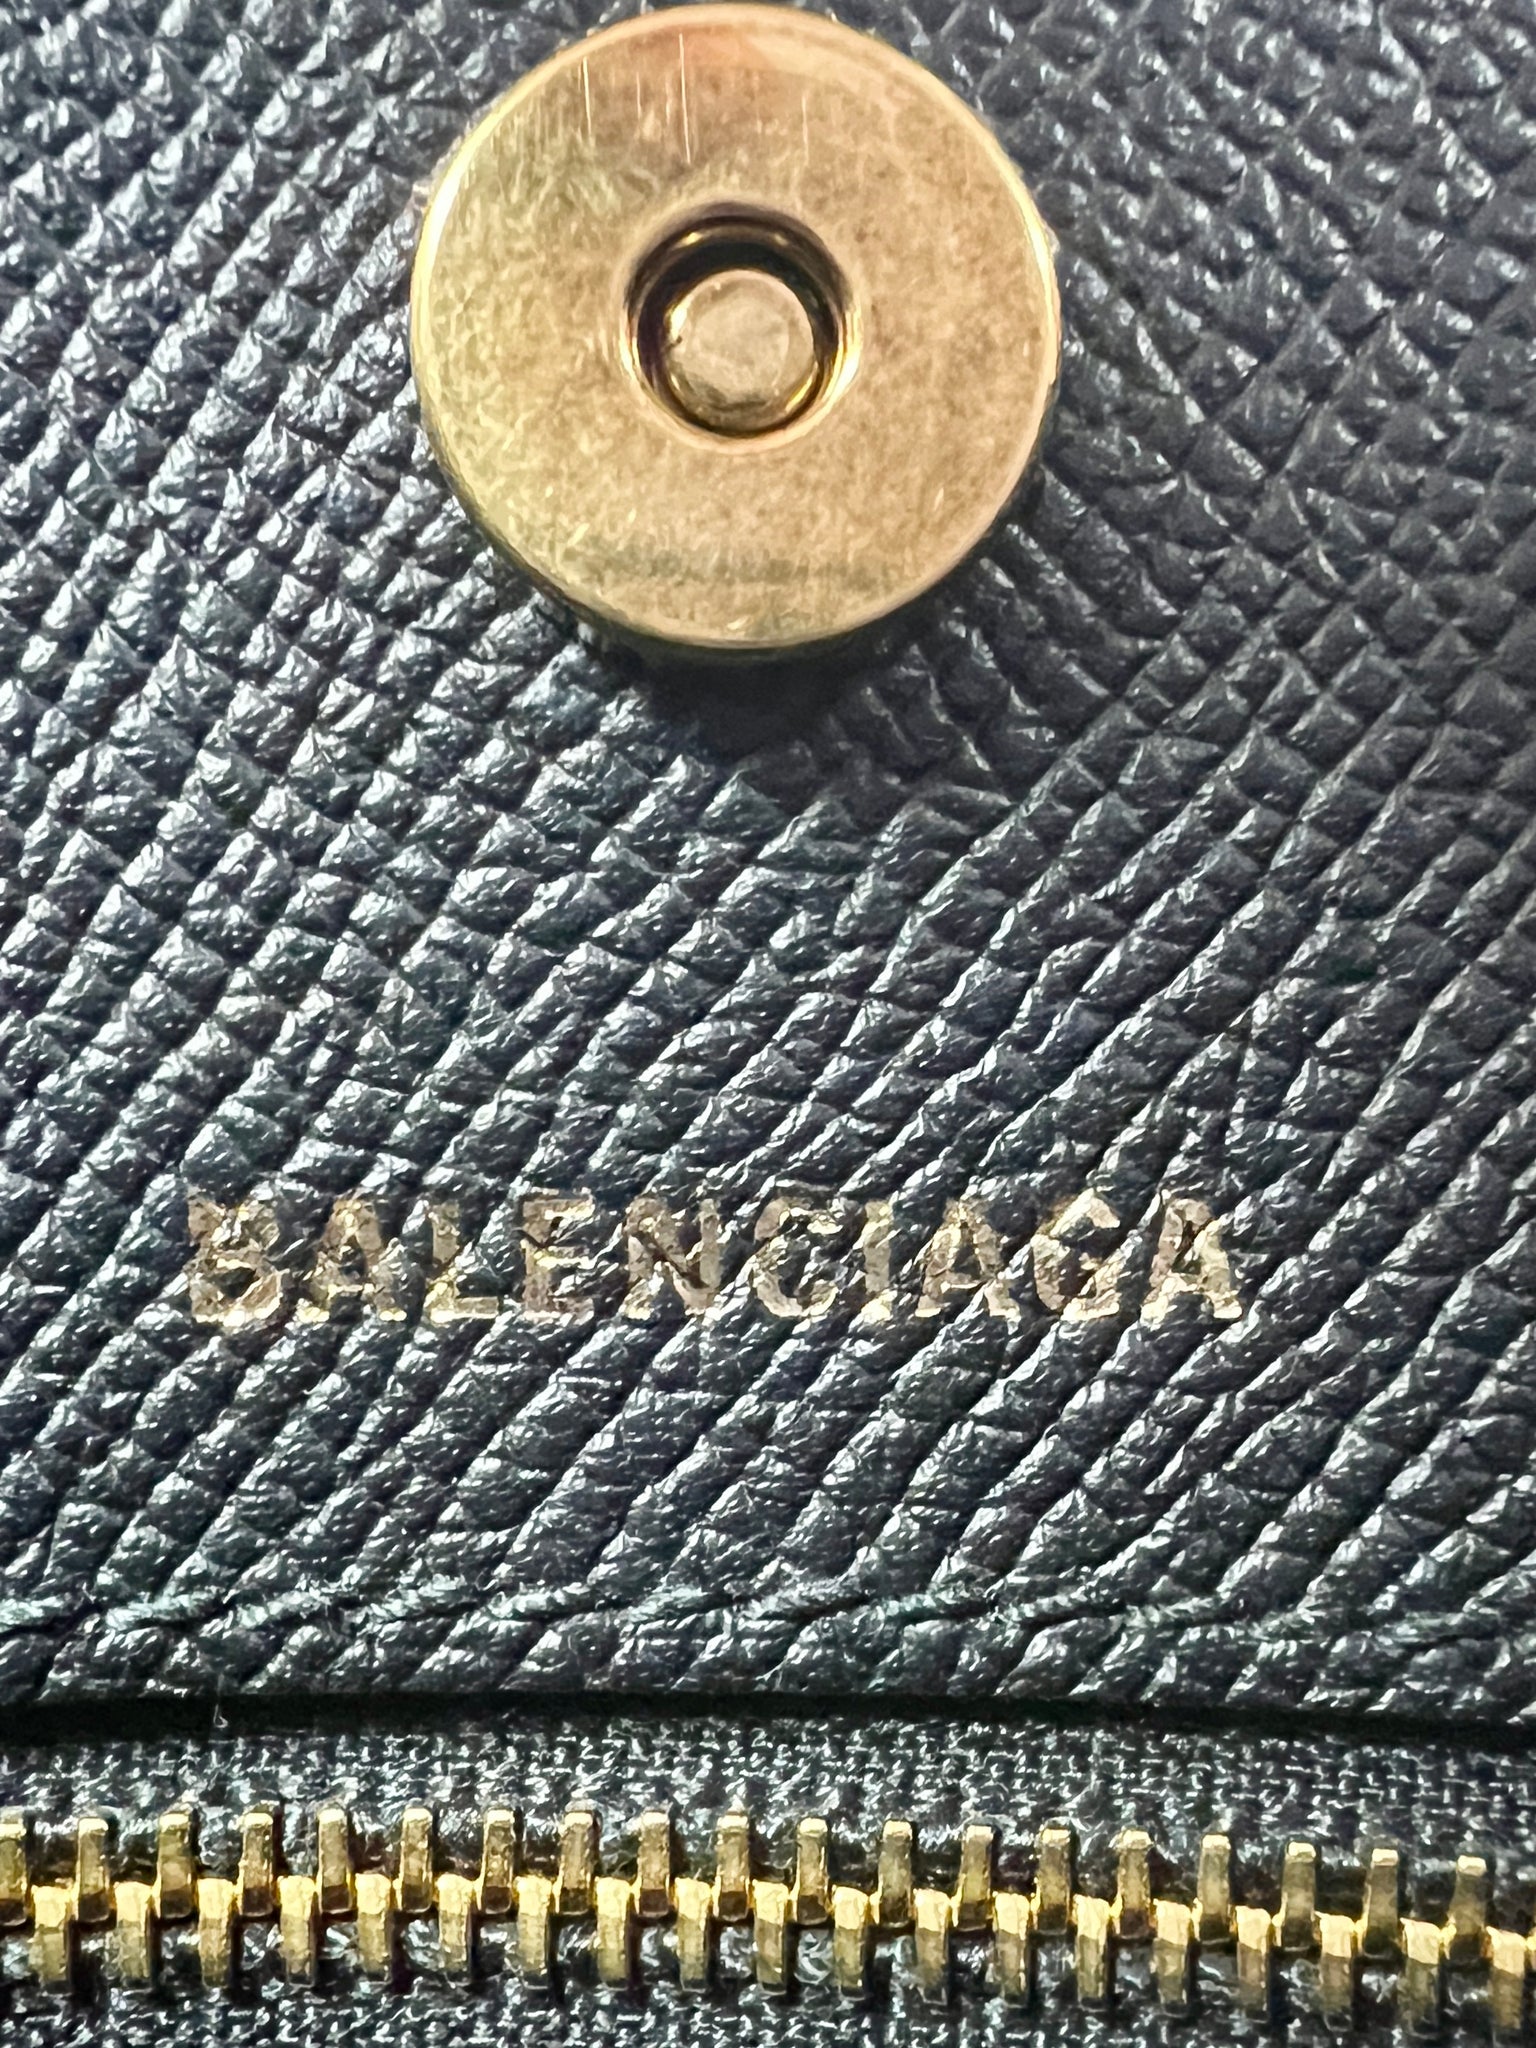 Balenciaga Logo Ville Tote Handbag Leather Bag XXS Black Shoulder Strap